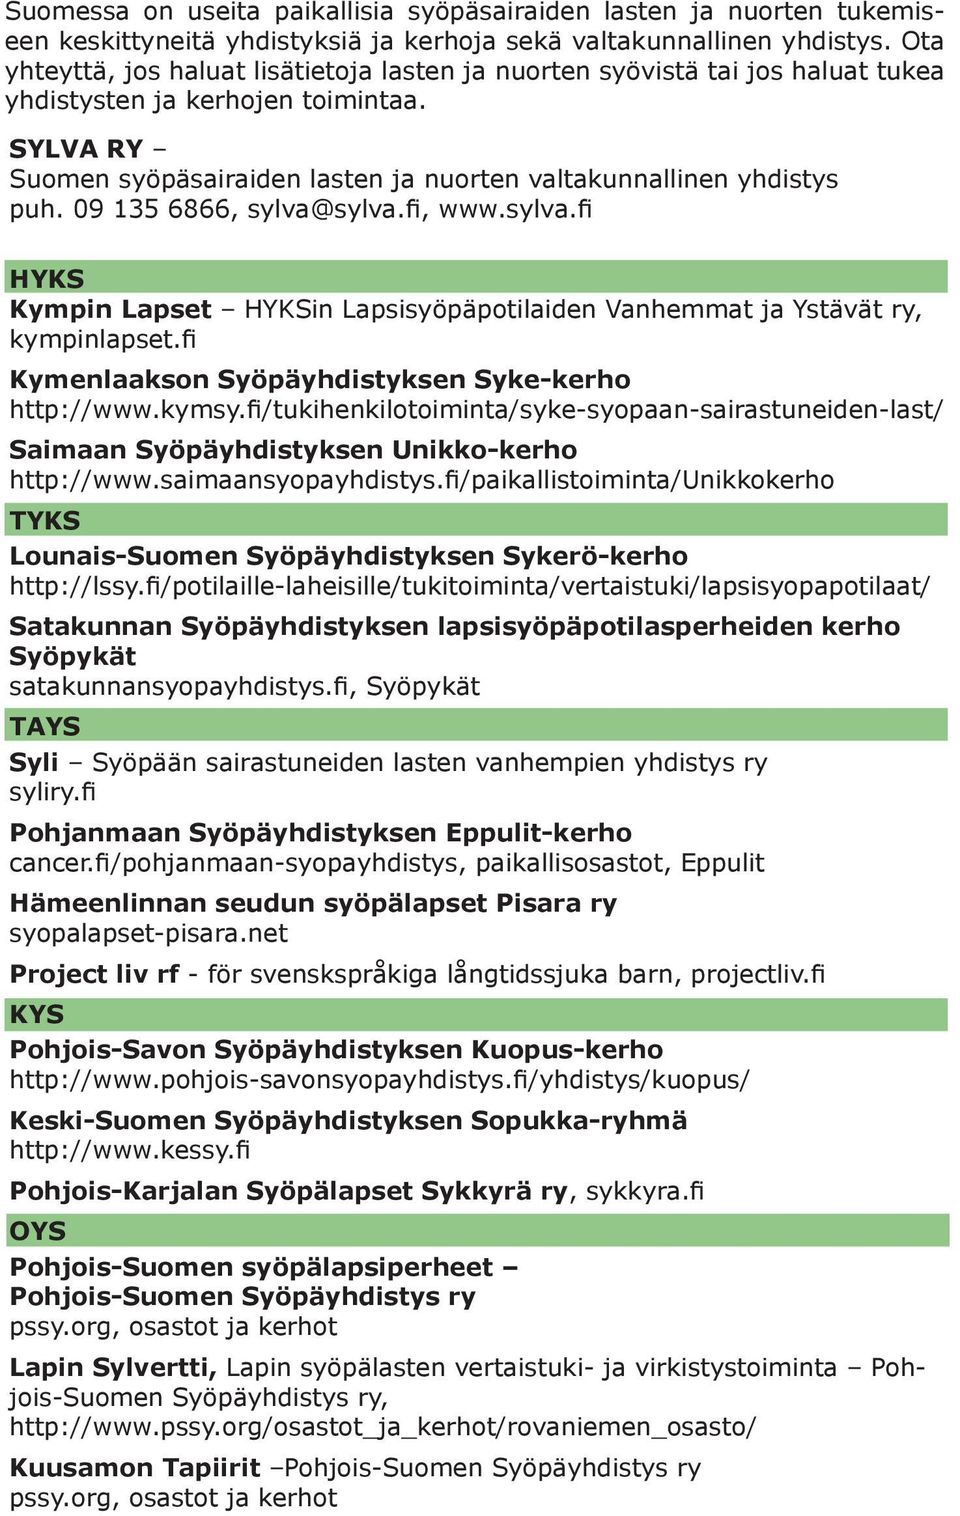 09 135 6866, sylva@sylva.fi, www.sylva.fi HYKS Kympin Lapset HYKSin Lapsisyöpäpotilaiden Vanhemmat ja Ystävät ry, kympinlapset.fi Kymenlaakson Syöpäyhdistyksen Syke-kerho http://www.kymsy.